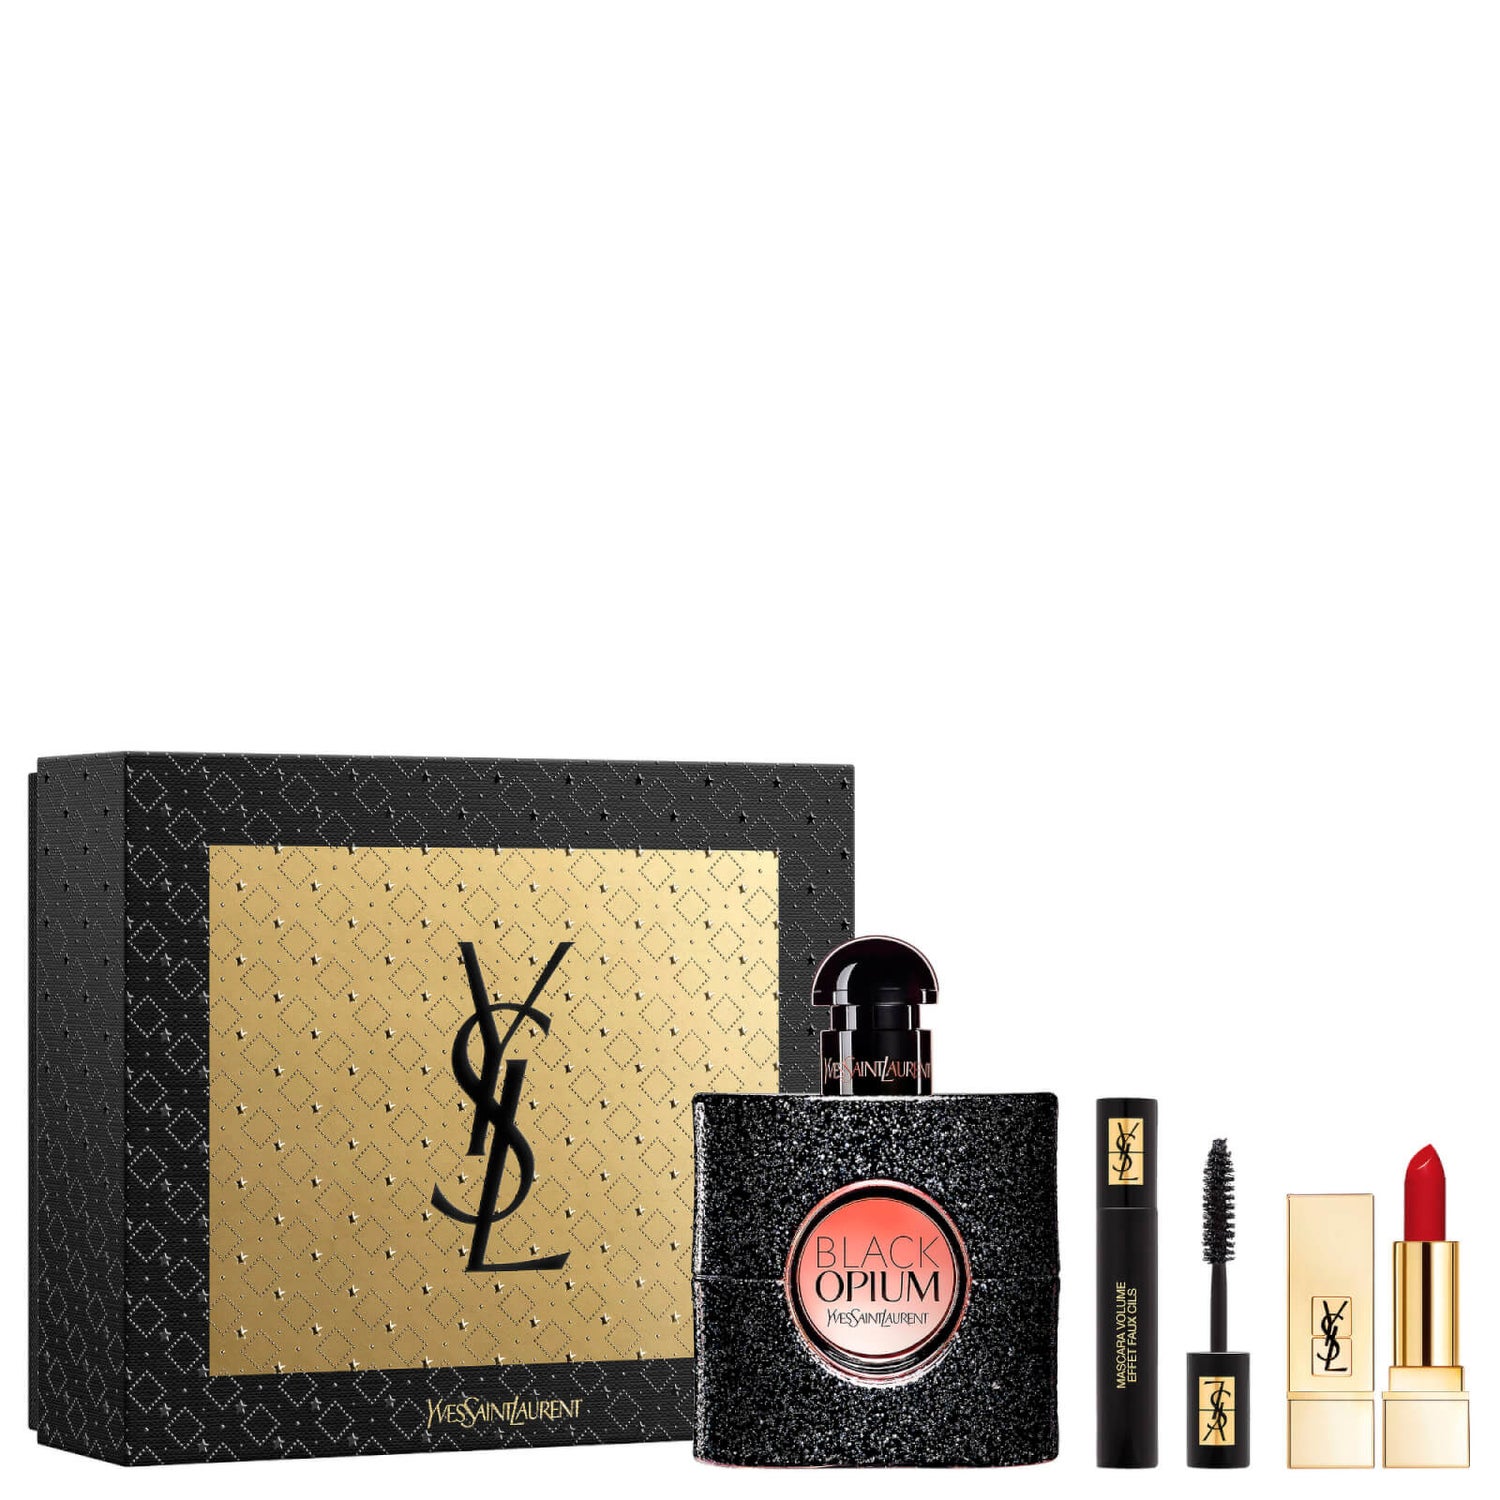 Yves Saint Laurent Black Opium Eau de Parfum and Makeup Icons Gift Set (Worth £103.00)